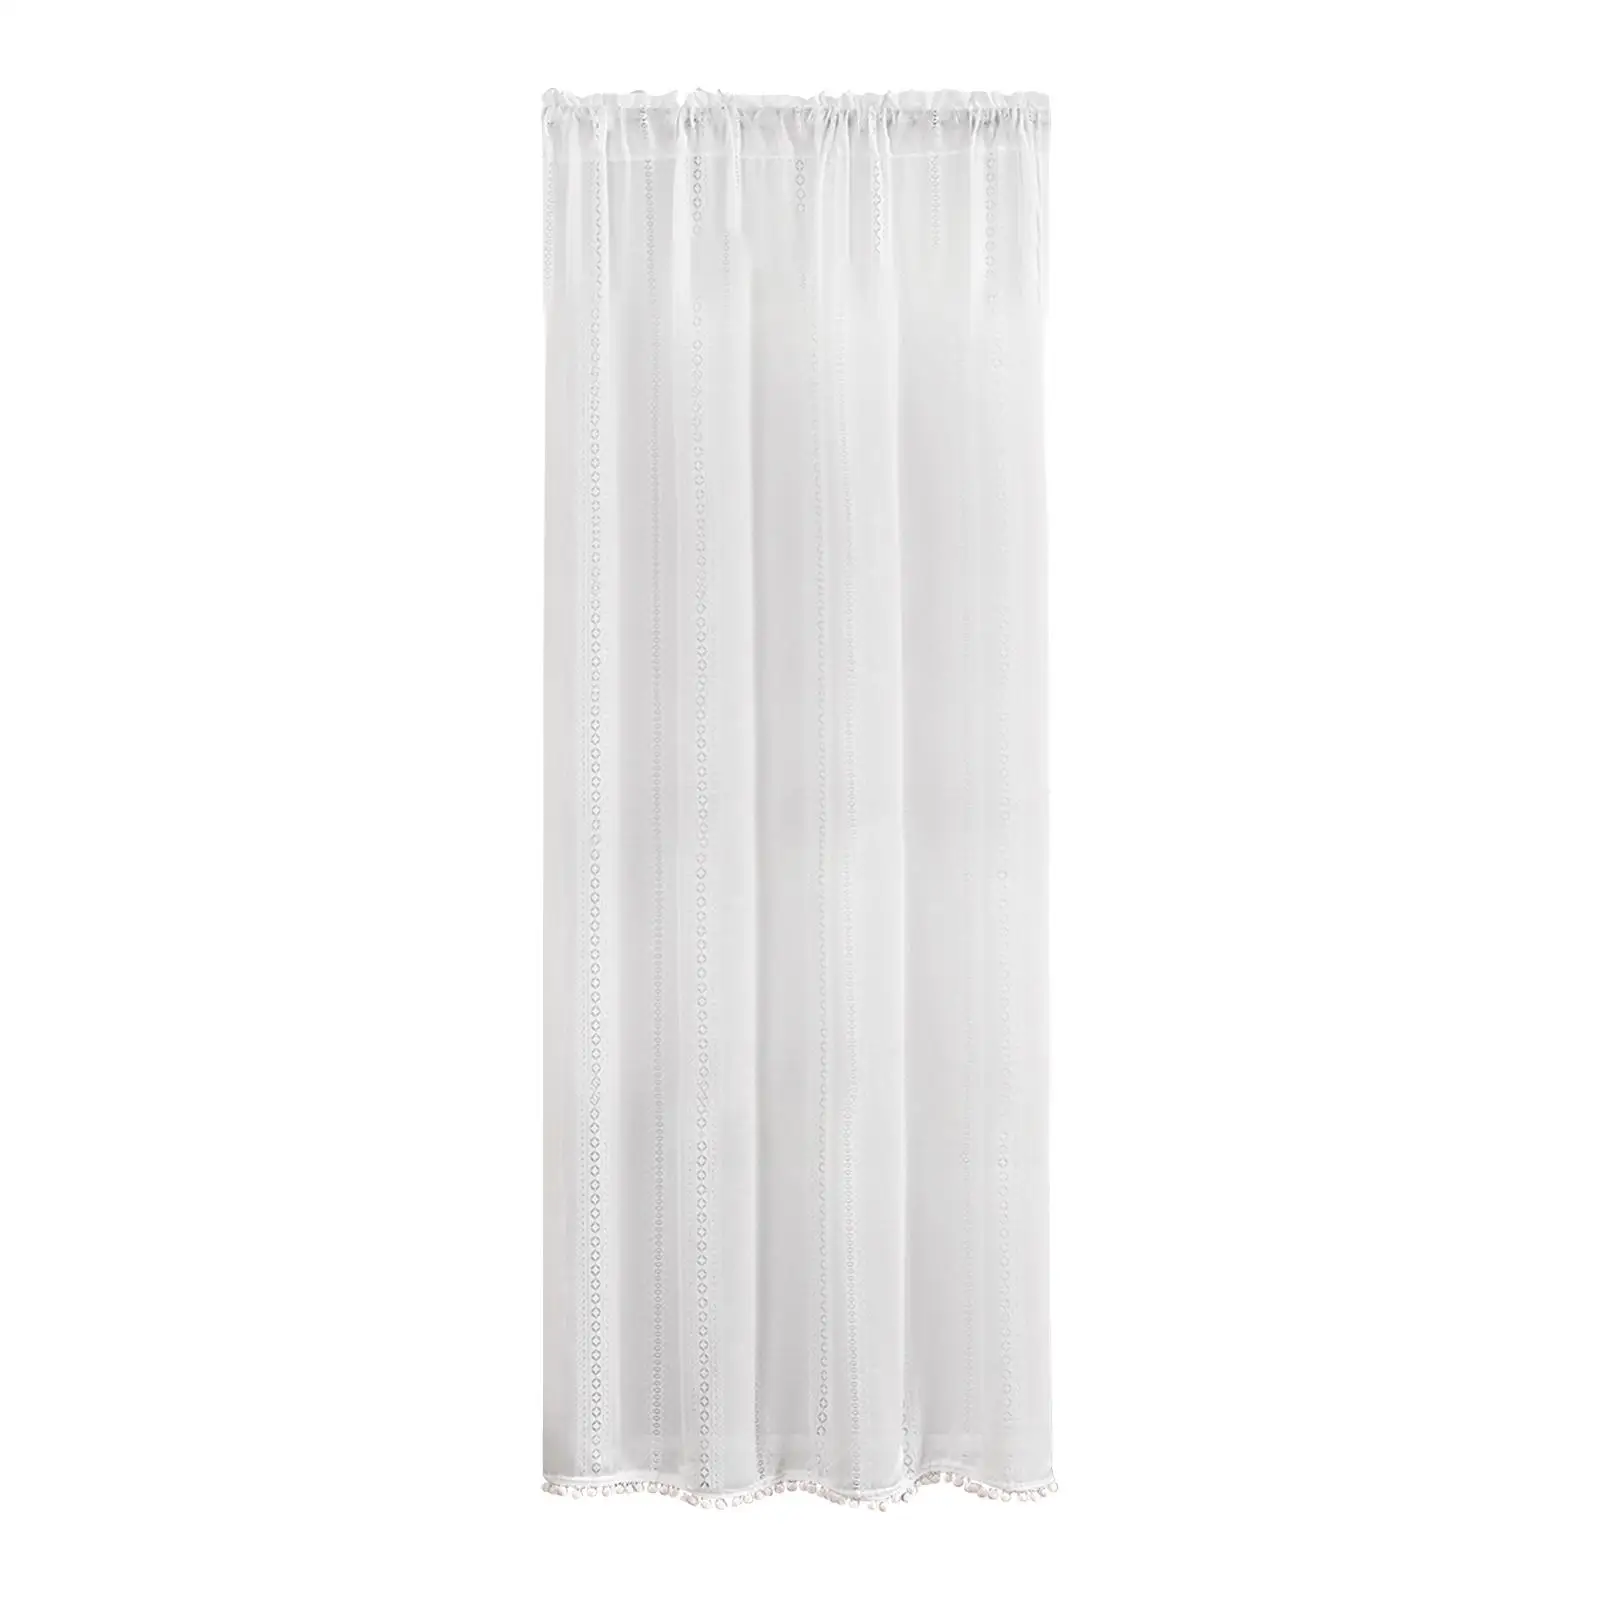 

Занавеска из белой пряжи 140 см x 175 см, занавески из прозрачной вуали для загородного дома, занавески для раздвижных стеклянных дверей, окон, украшение для гостиной